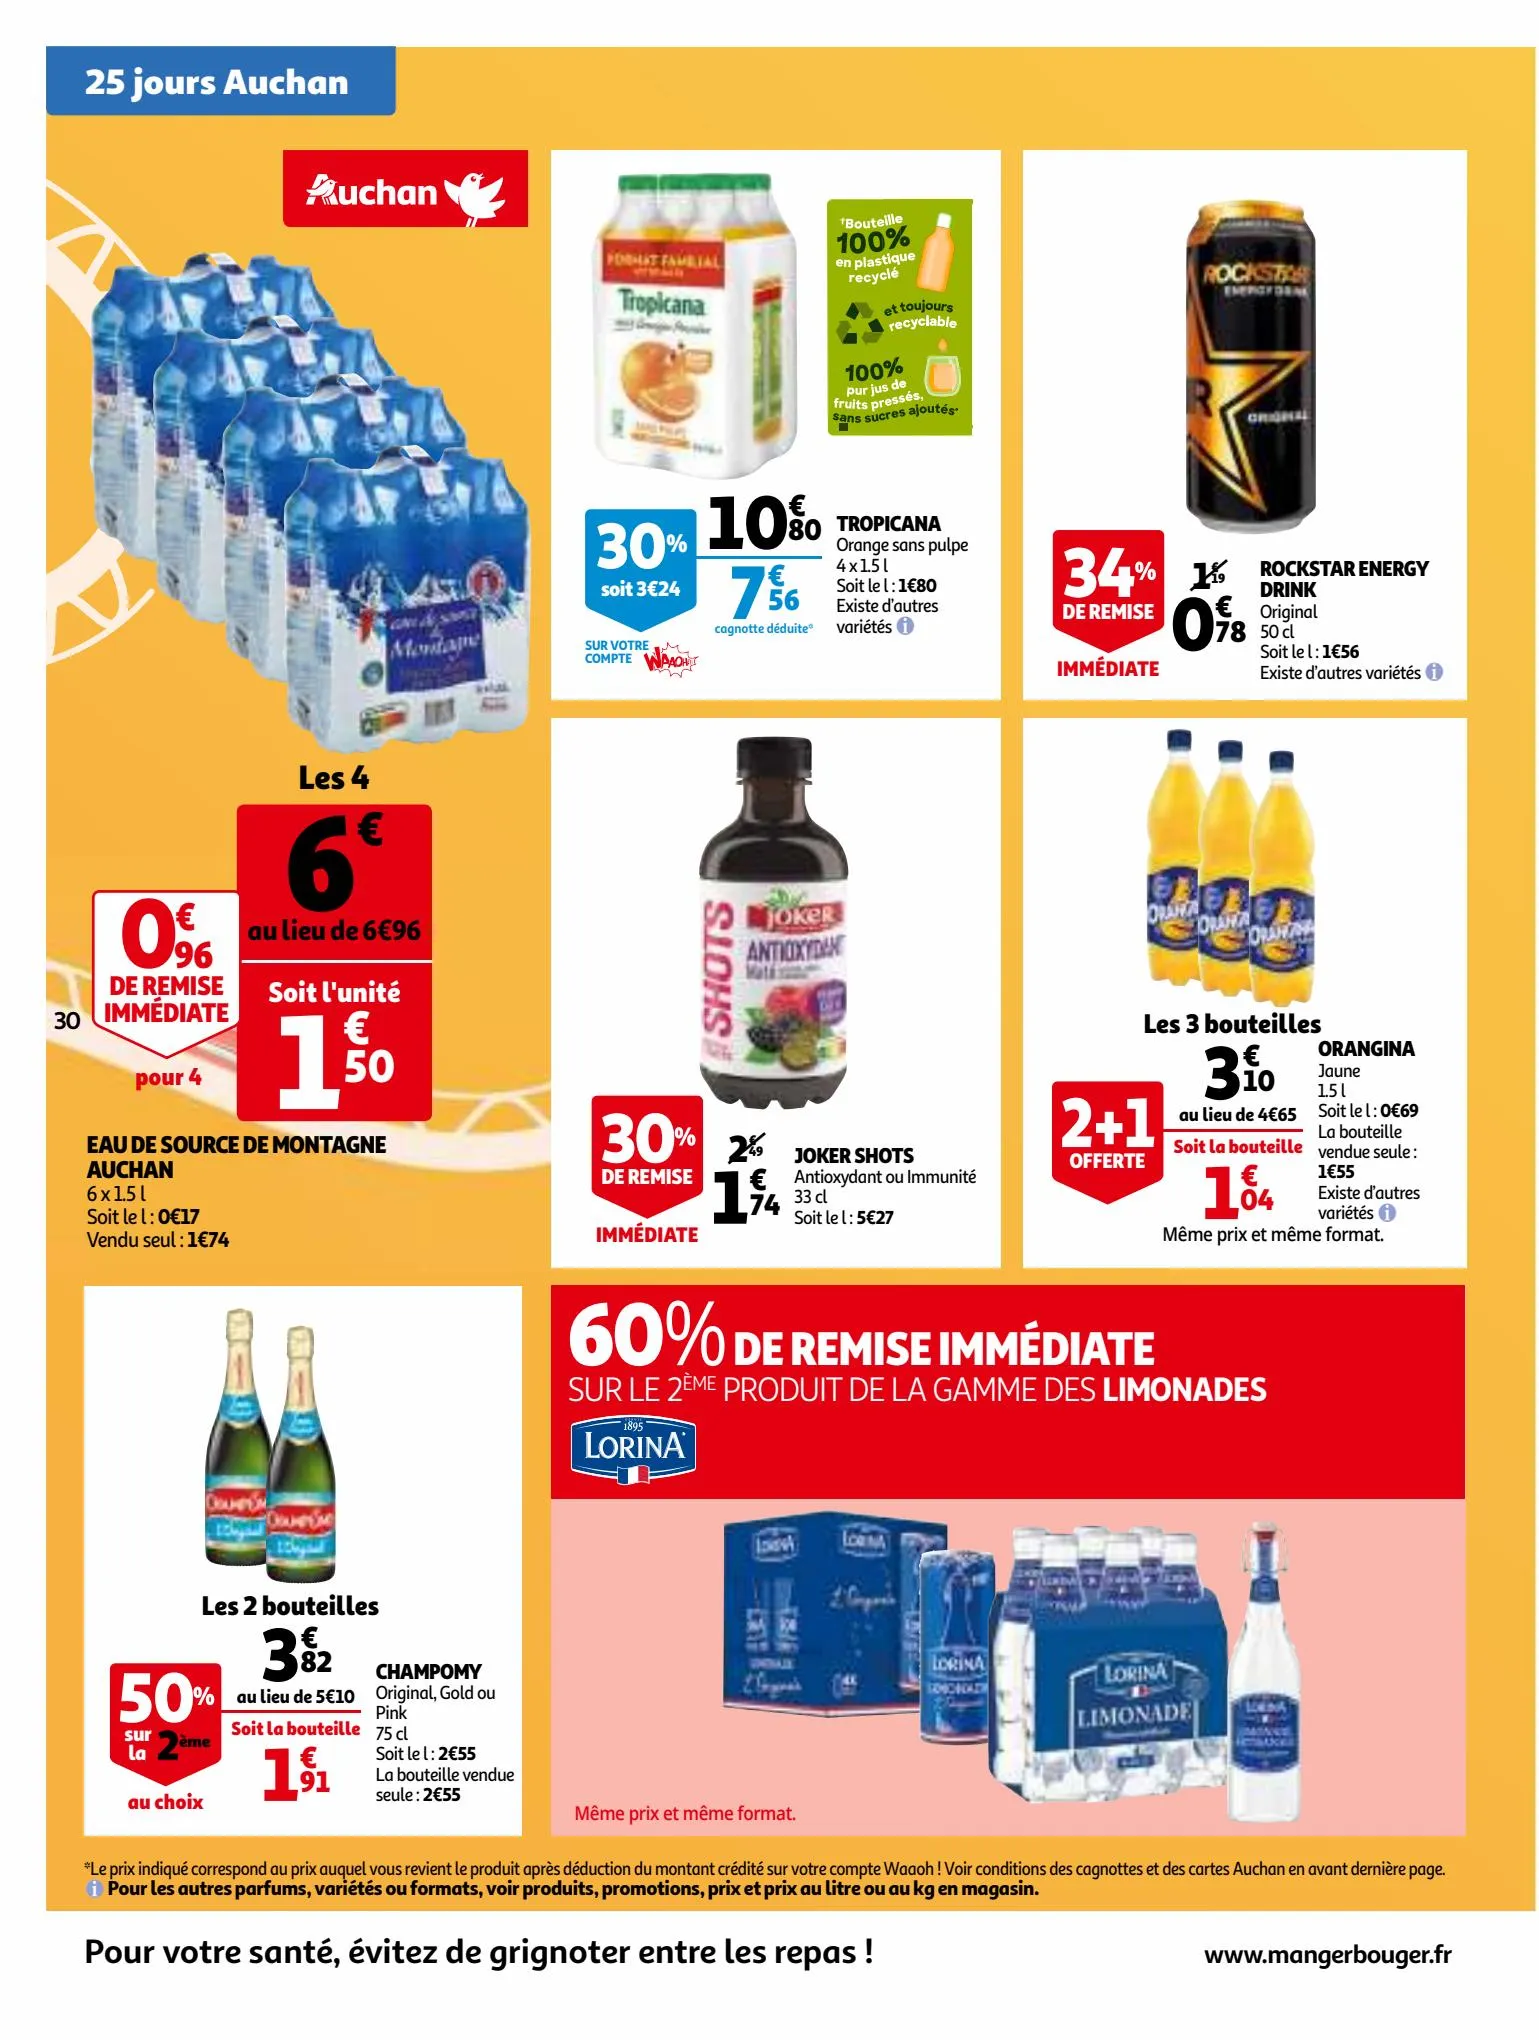 Catalogue 25 Jours Auchan, page 00030